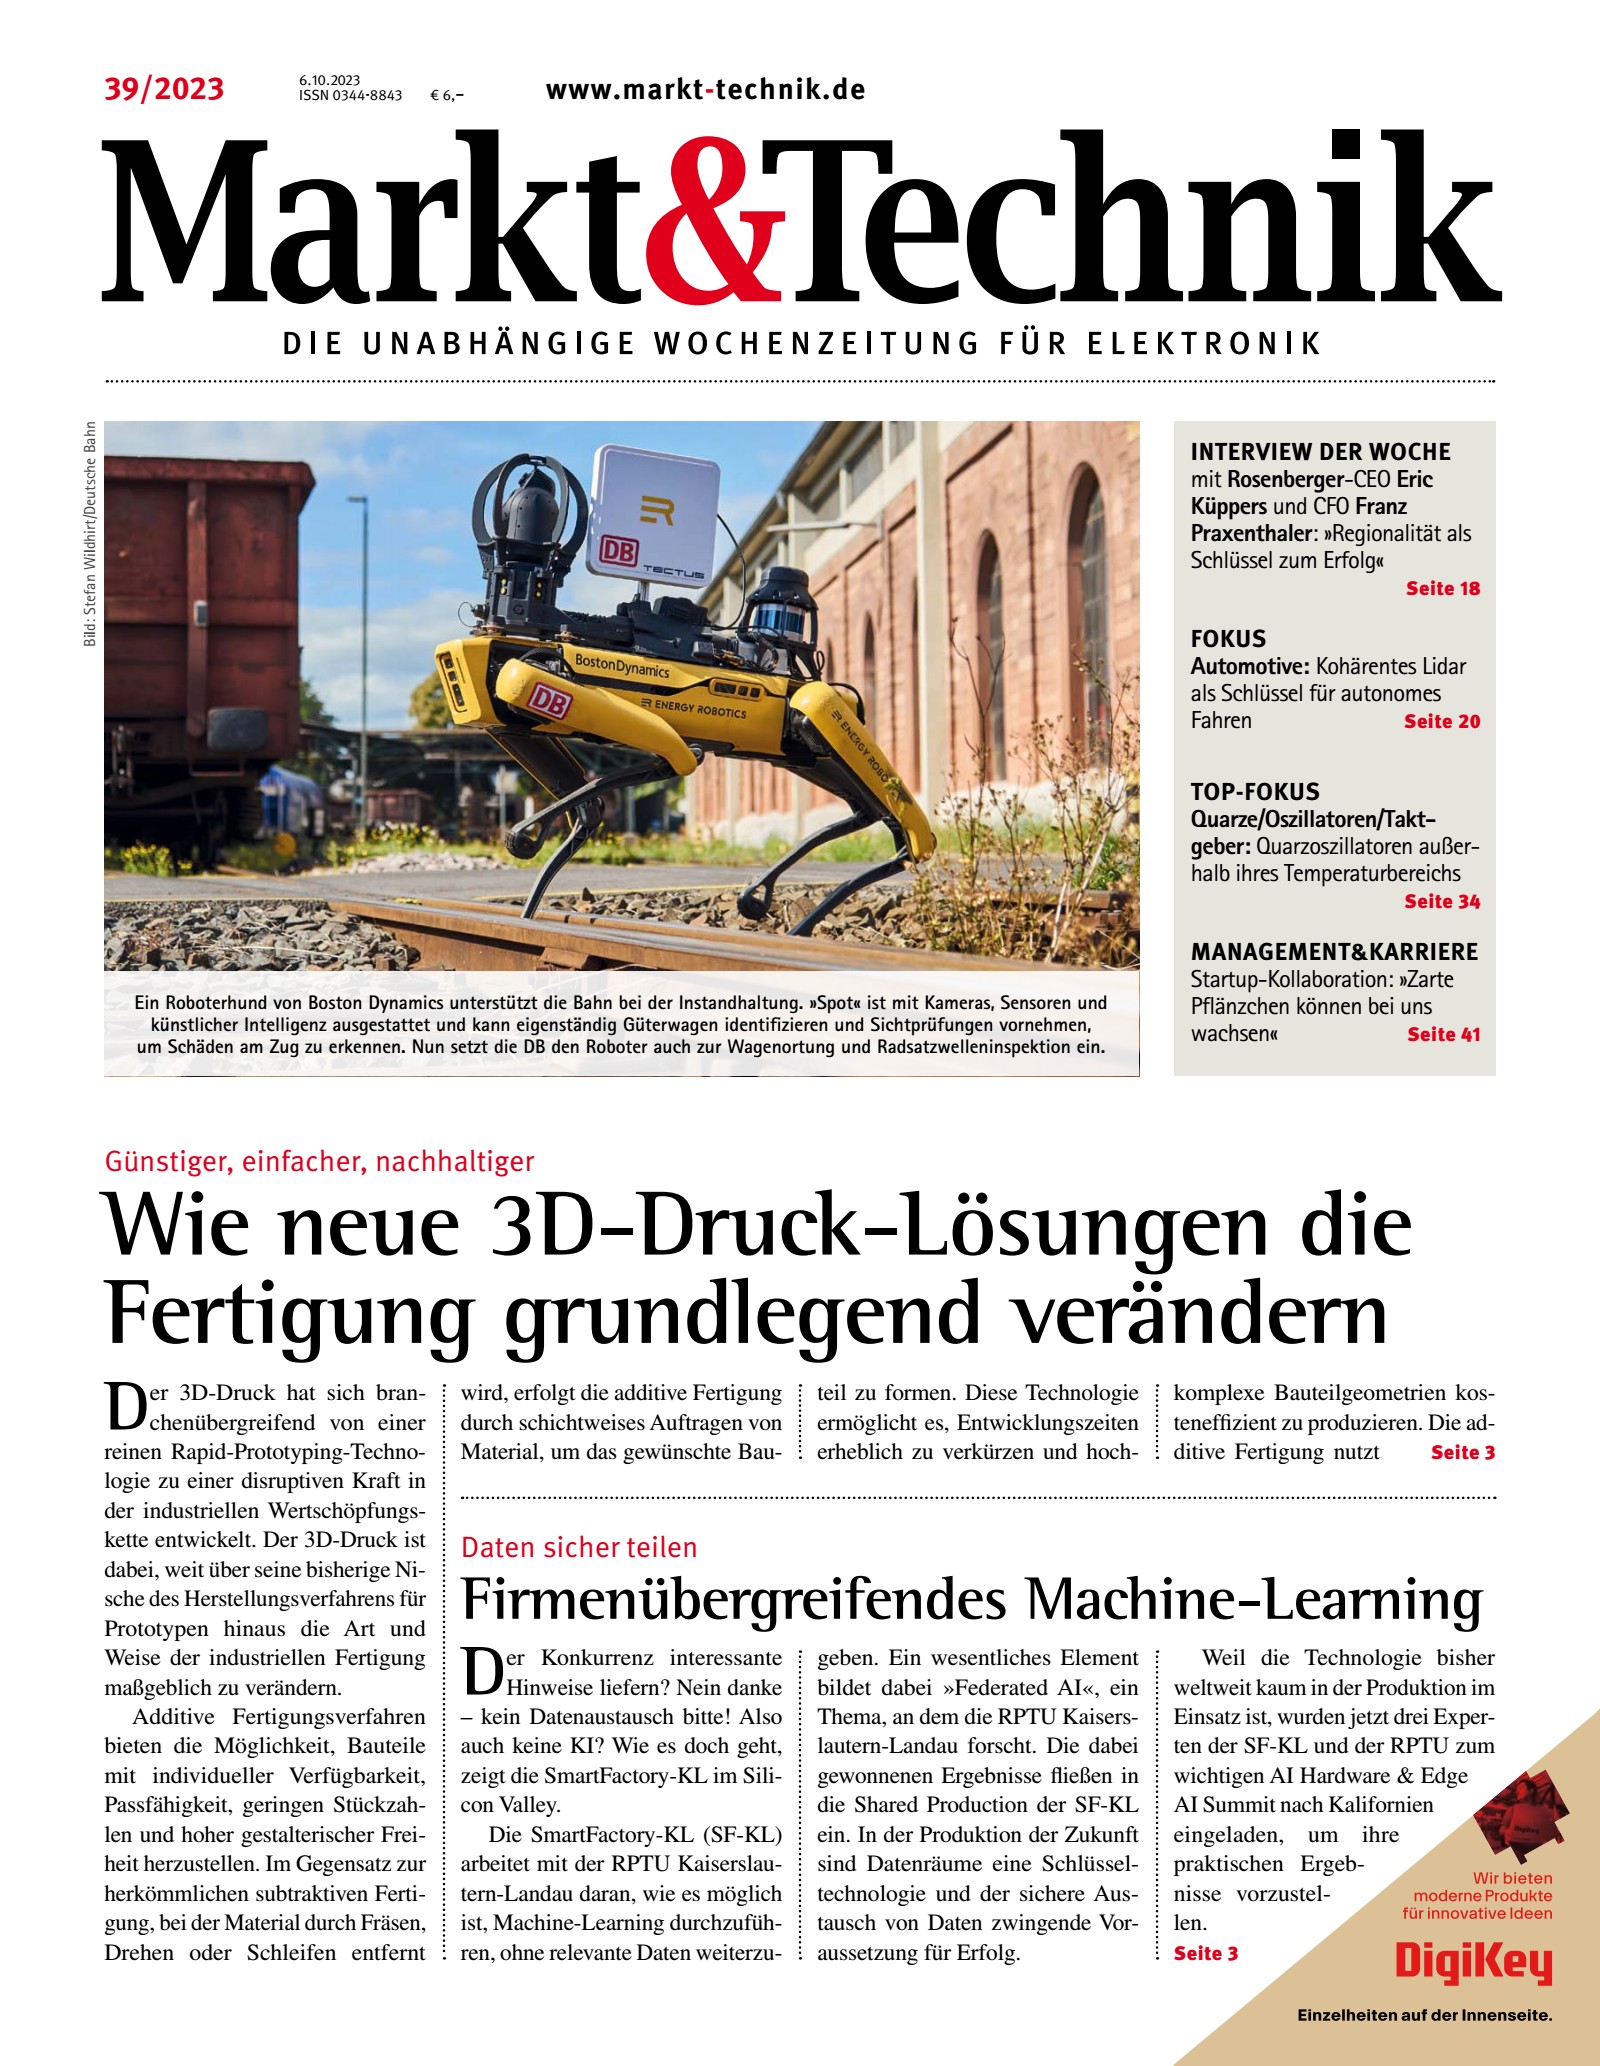 Markt&Technik 0039/2023 Digital